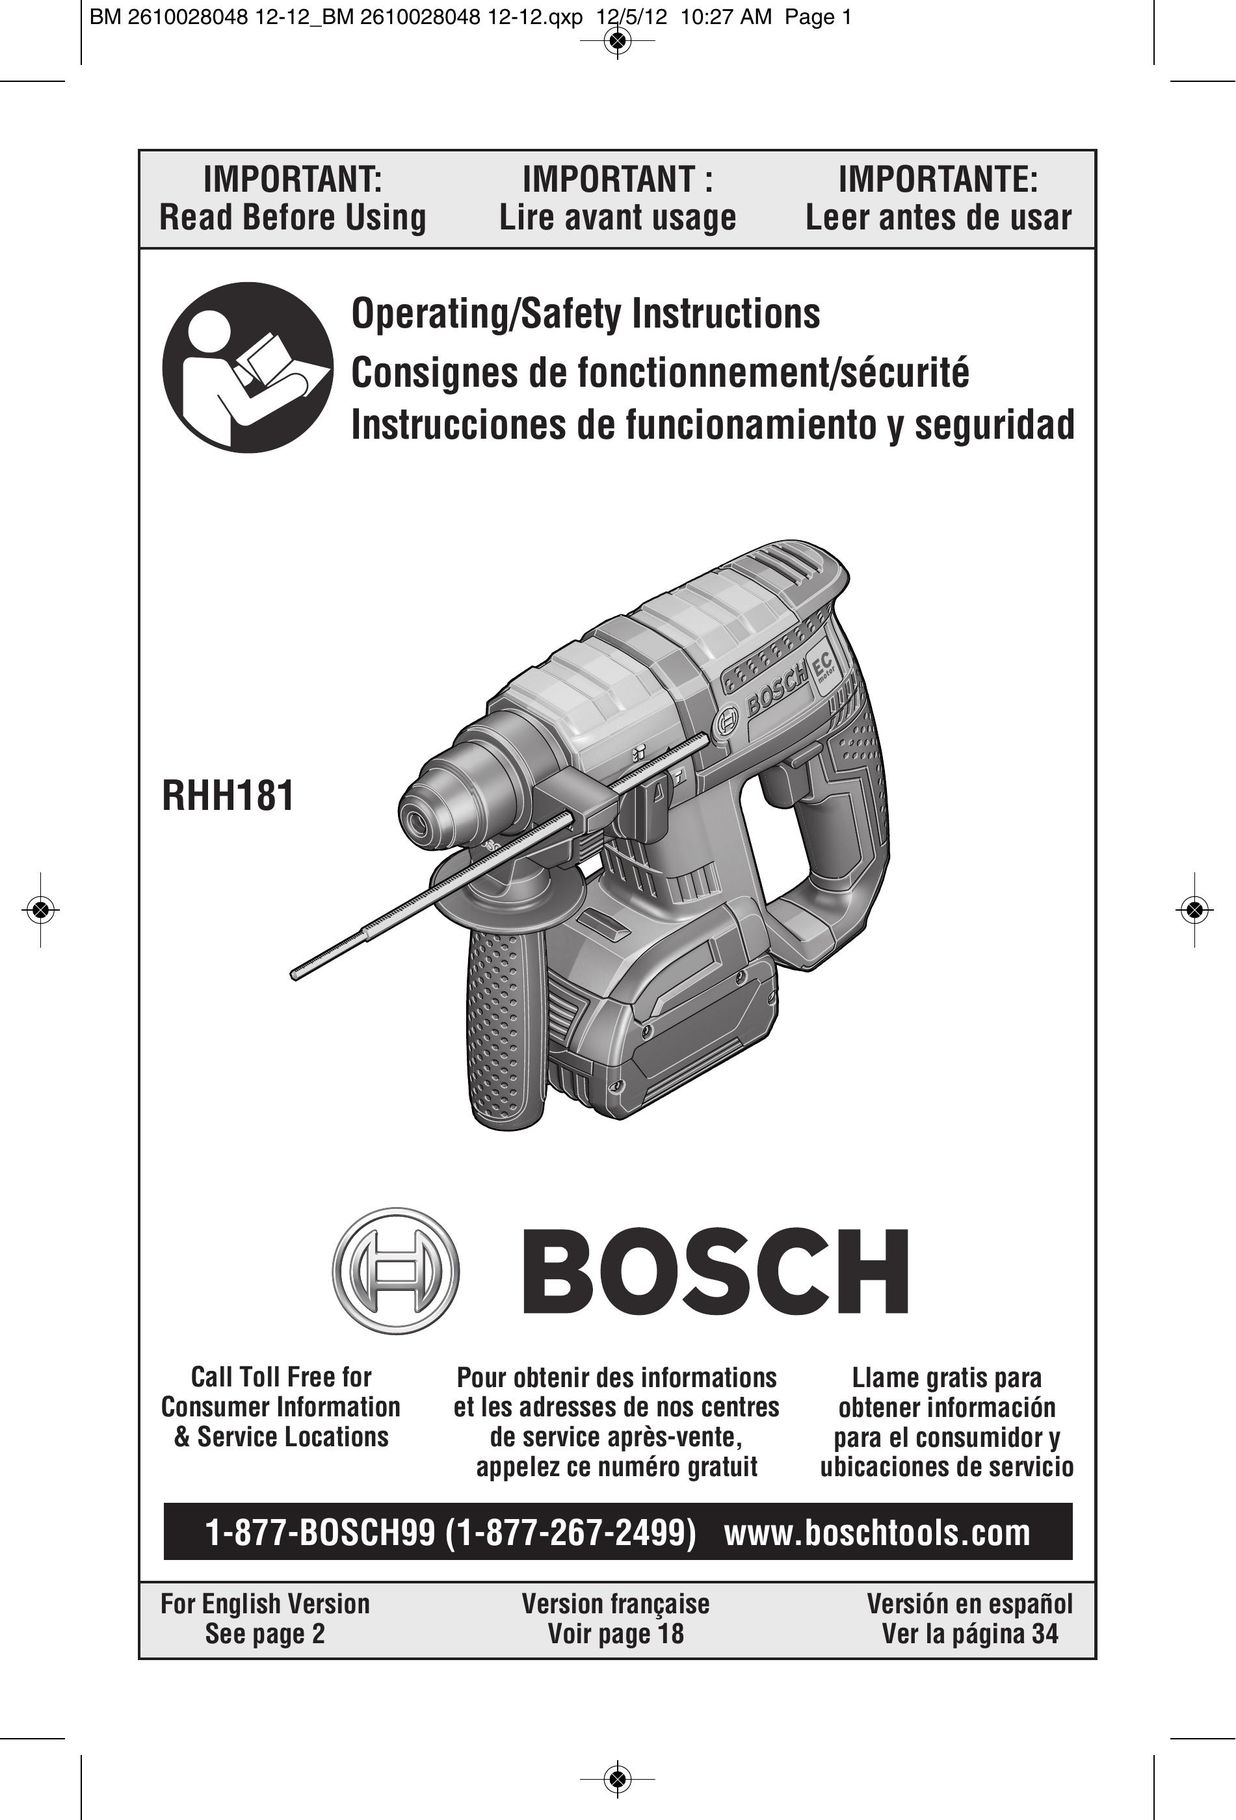 Bosch Power Tools RHH181 Power Hammer User Manual